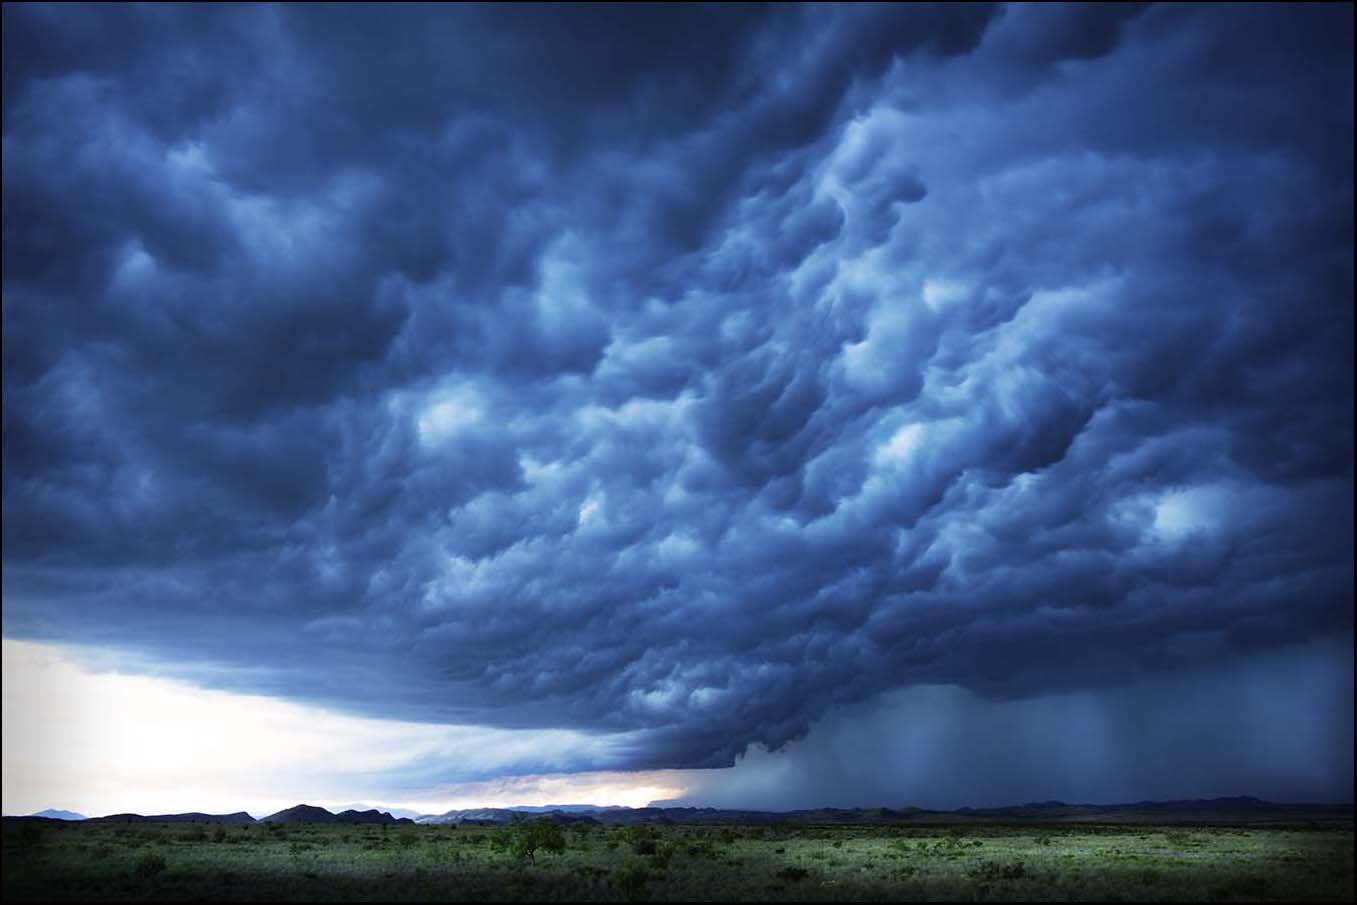 June Storm, Marathon_© James H. Evans